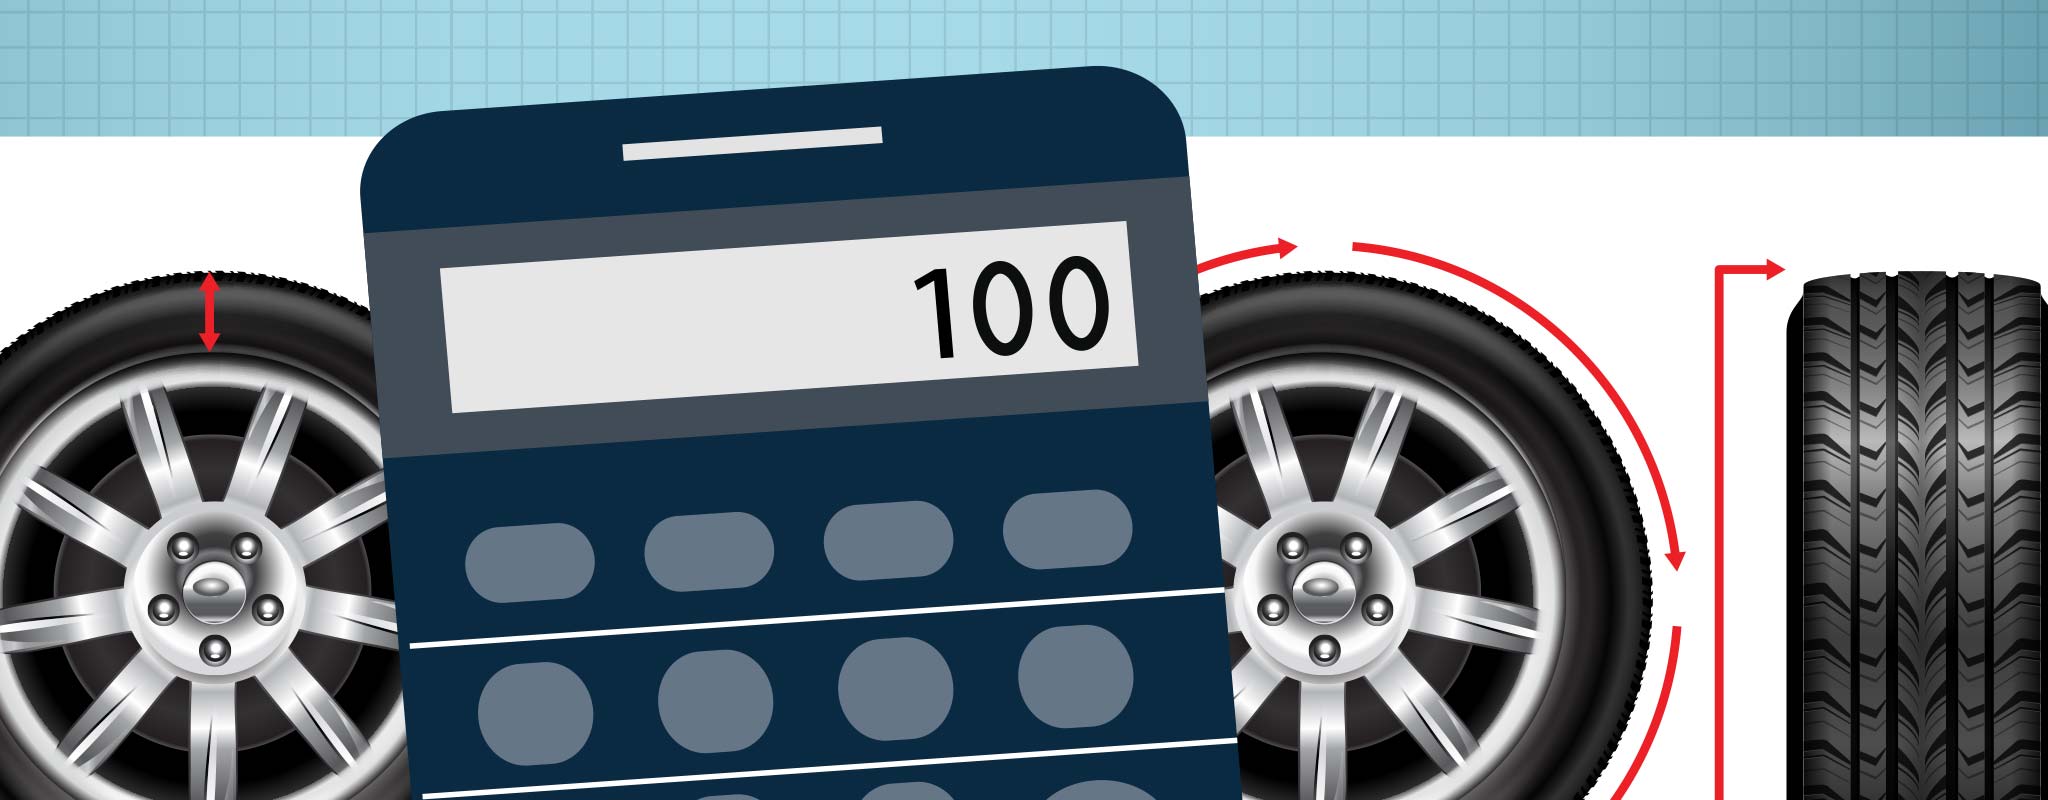 185/55-R15 vs 185/60-R15 Tire Comparison - Tire Size Calculator